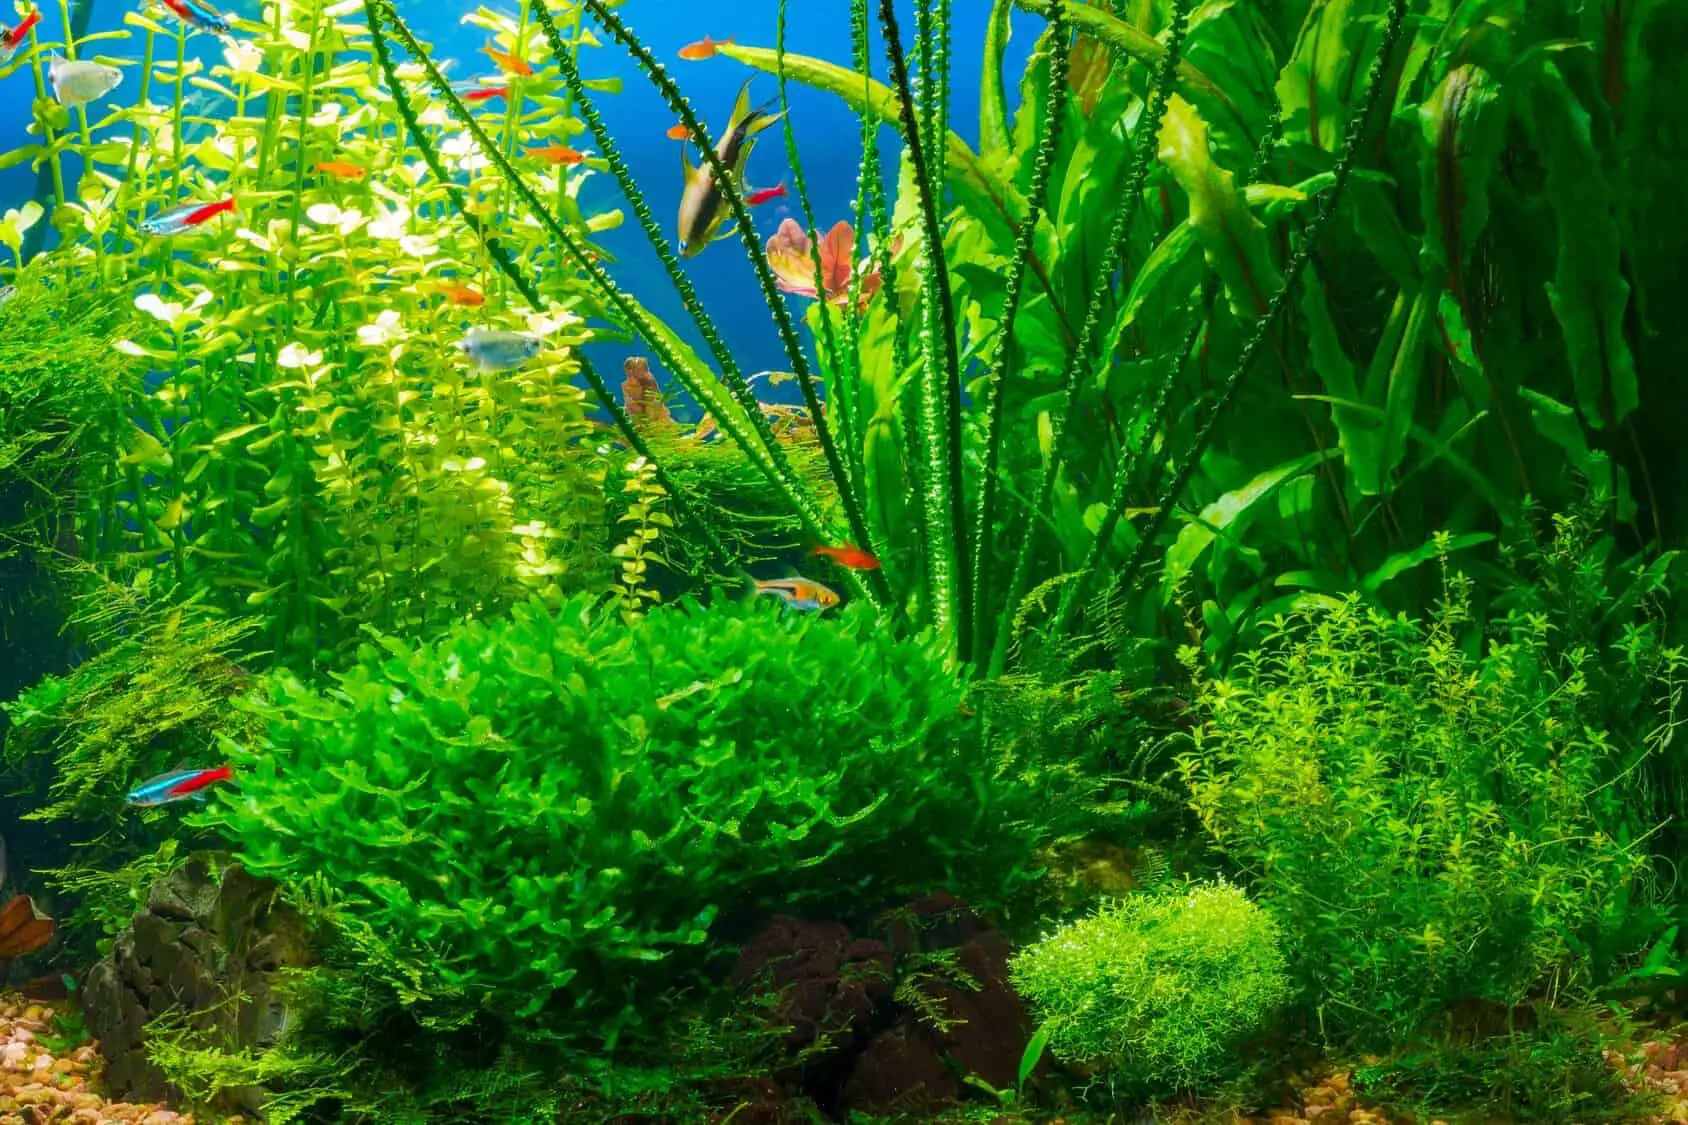 Staurogyne repens aquarium plant care